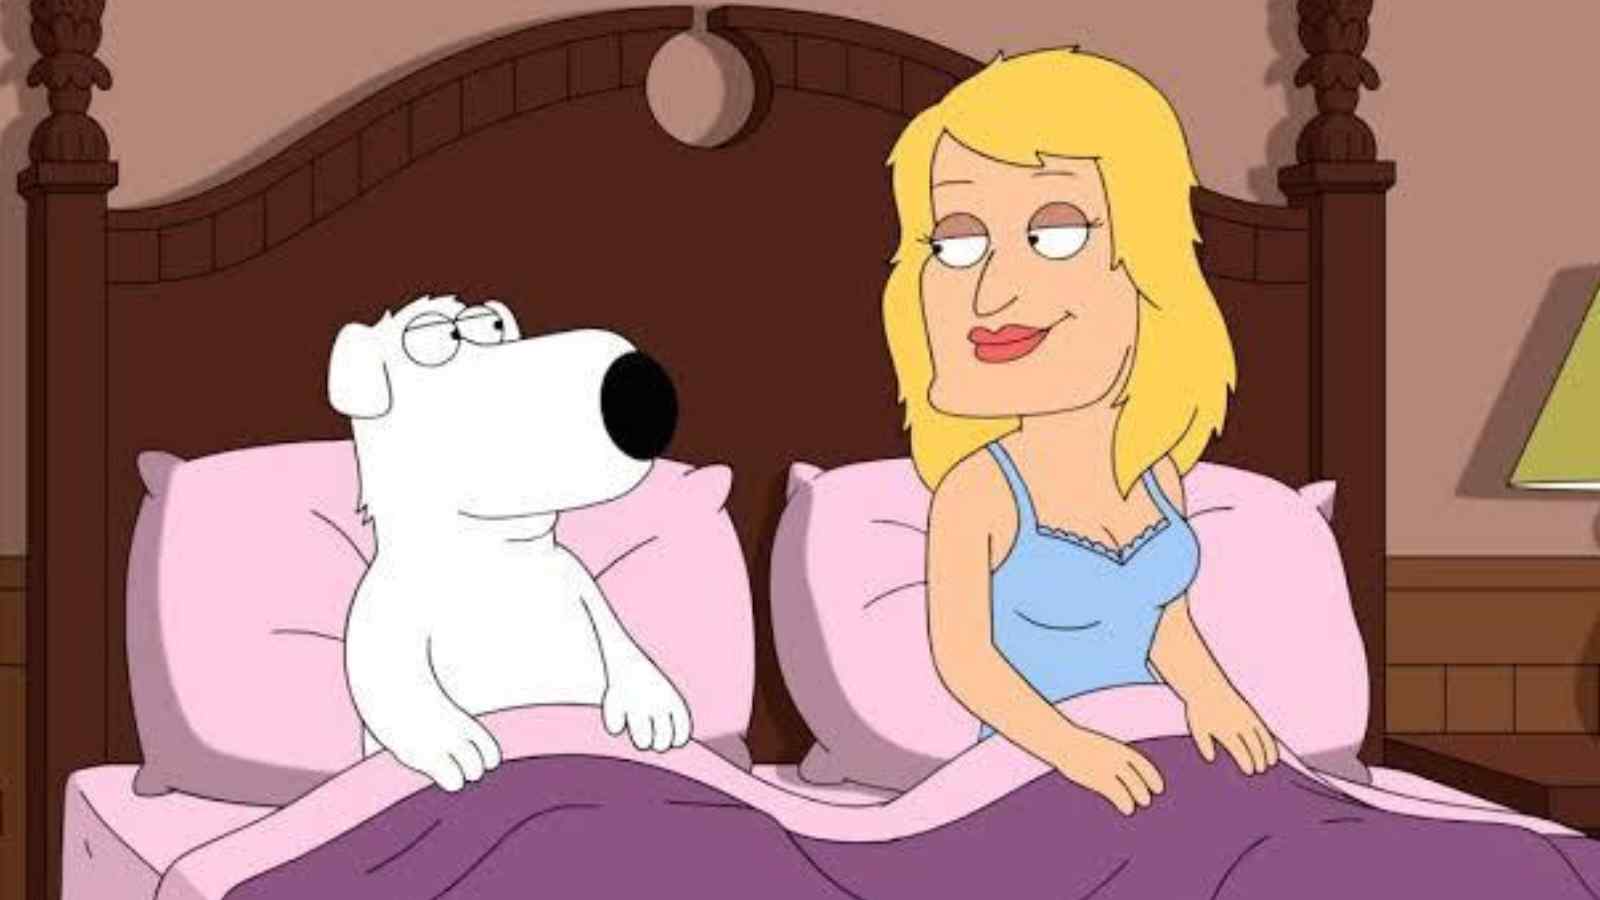 Transphobia in Family Guy